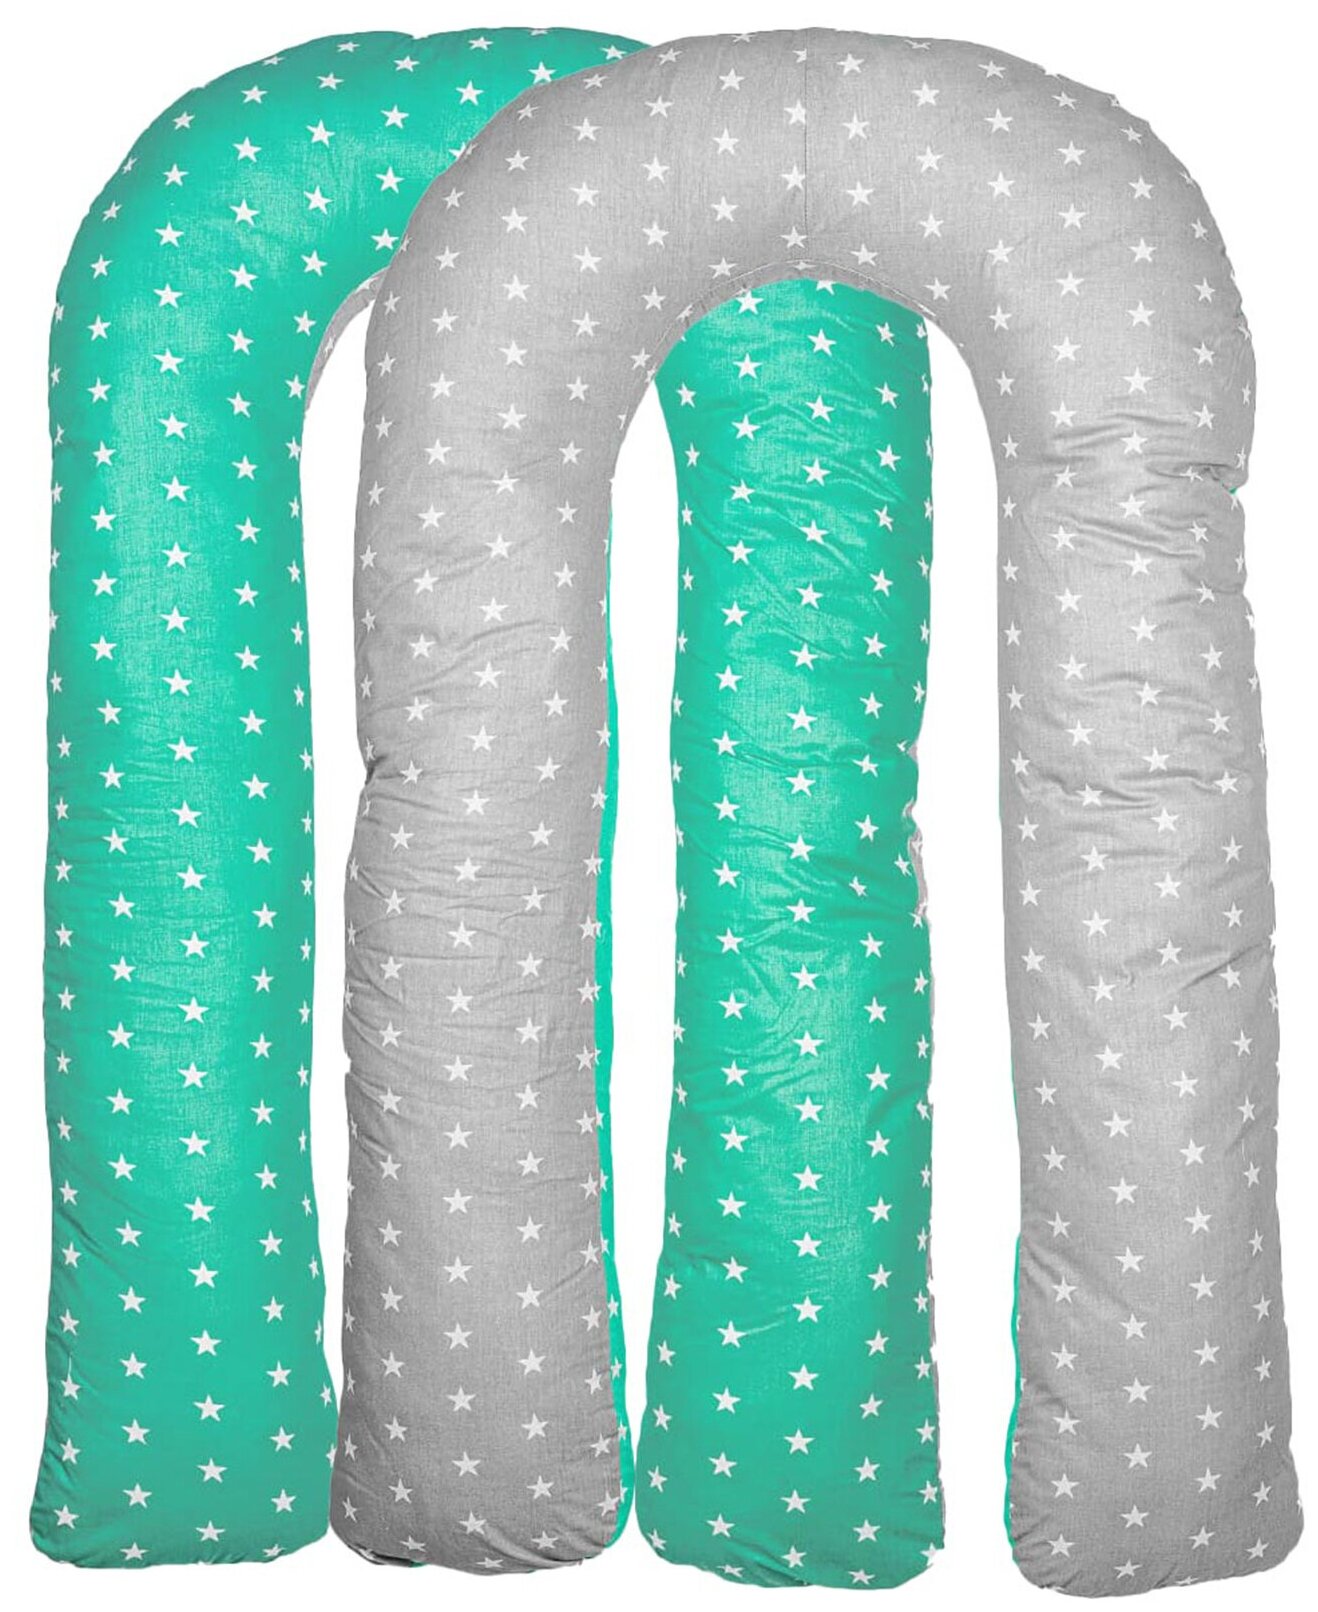 Подушка для беременных Vensalio U340 Comfort "Звезды", мятная с серым, 140x90